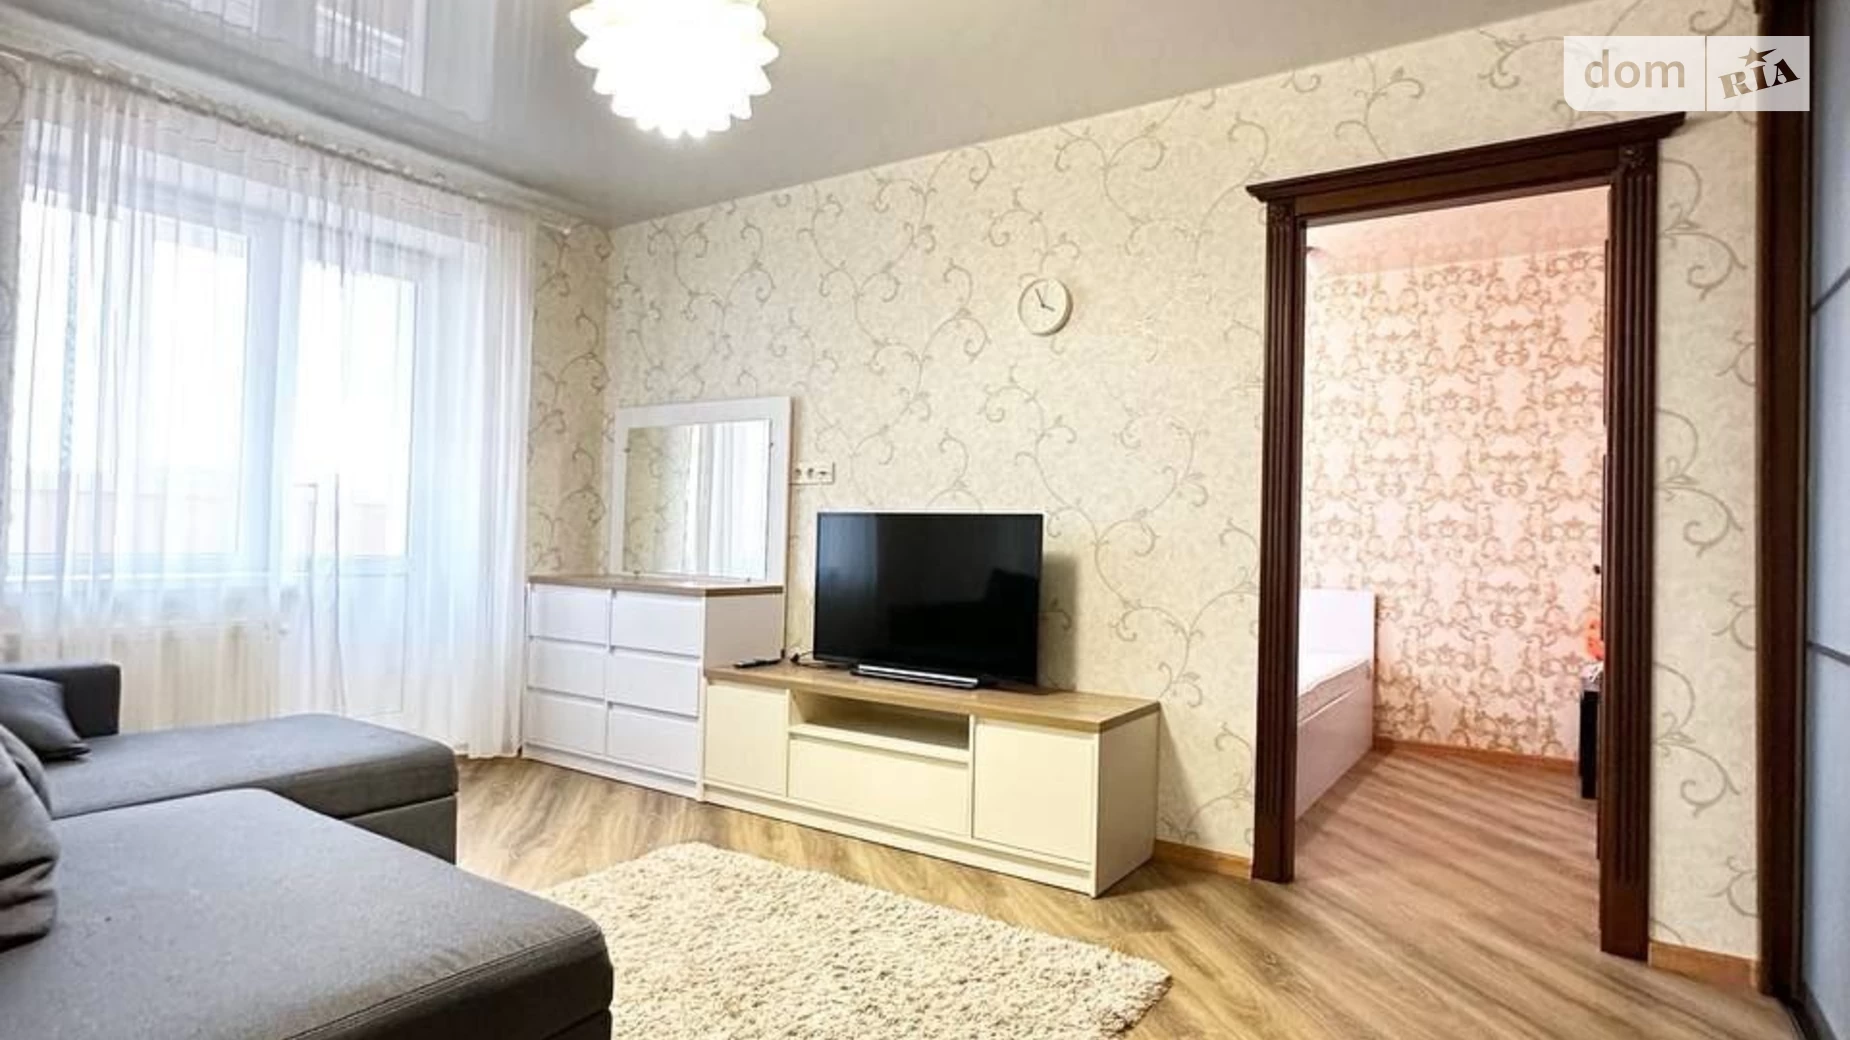 Продається 2-кімнатна квартира 44.08 кв. м у Сумах, вул. Куликівська